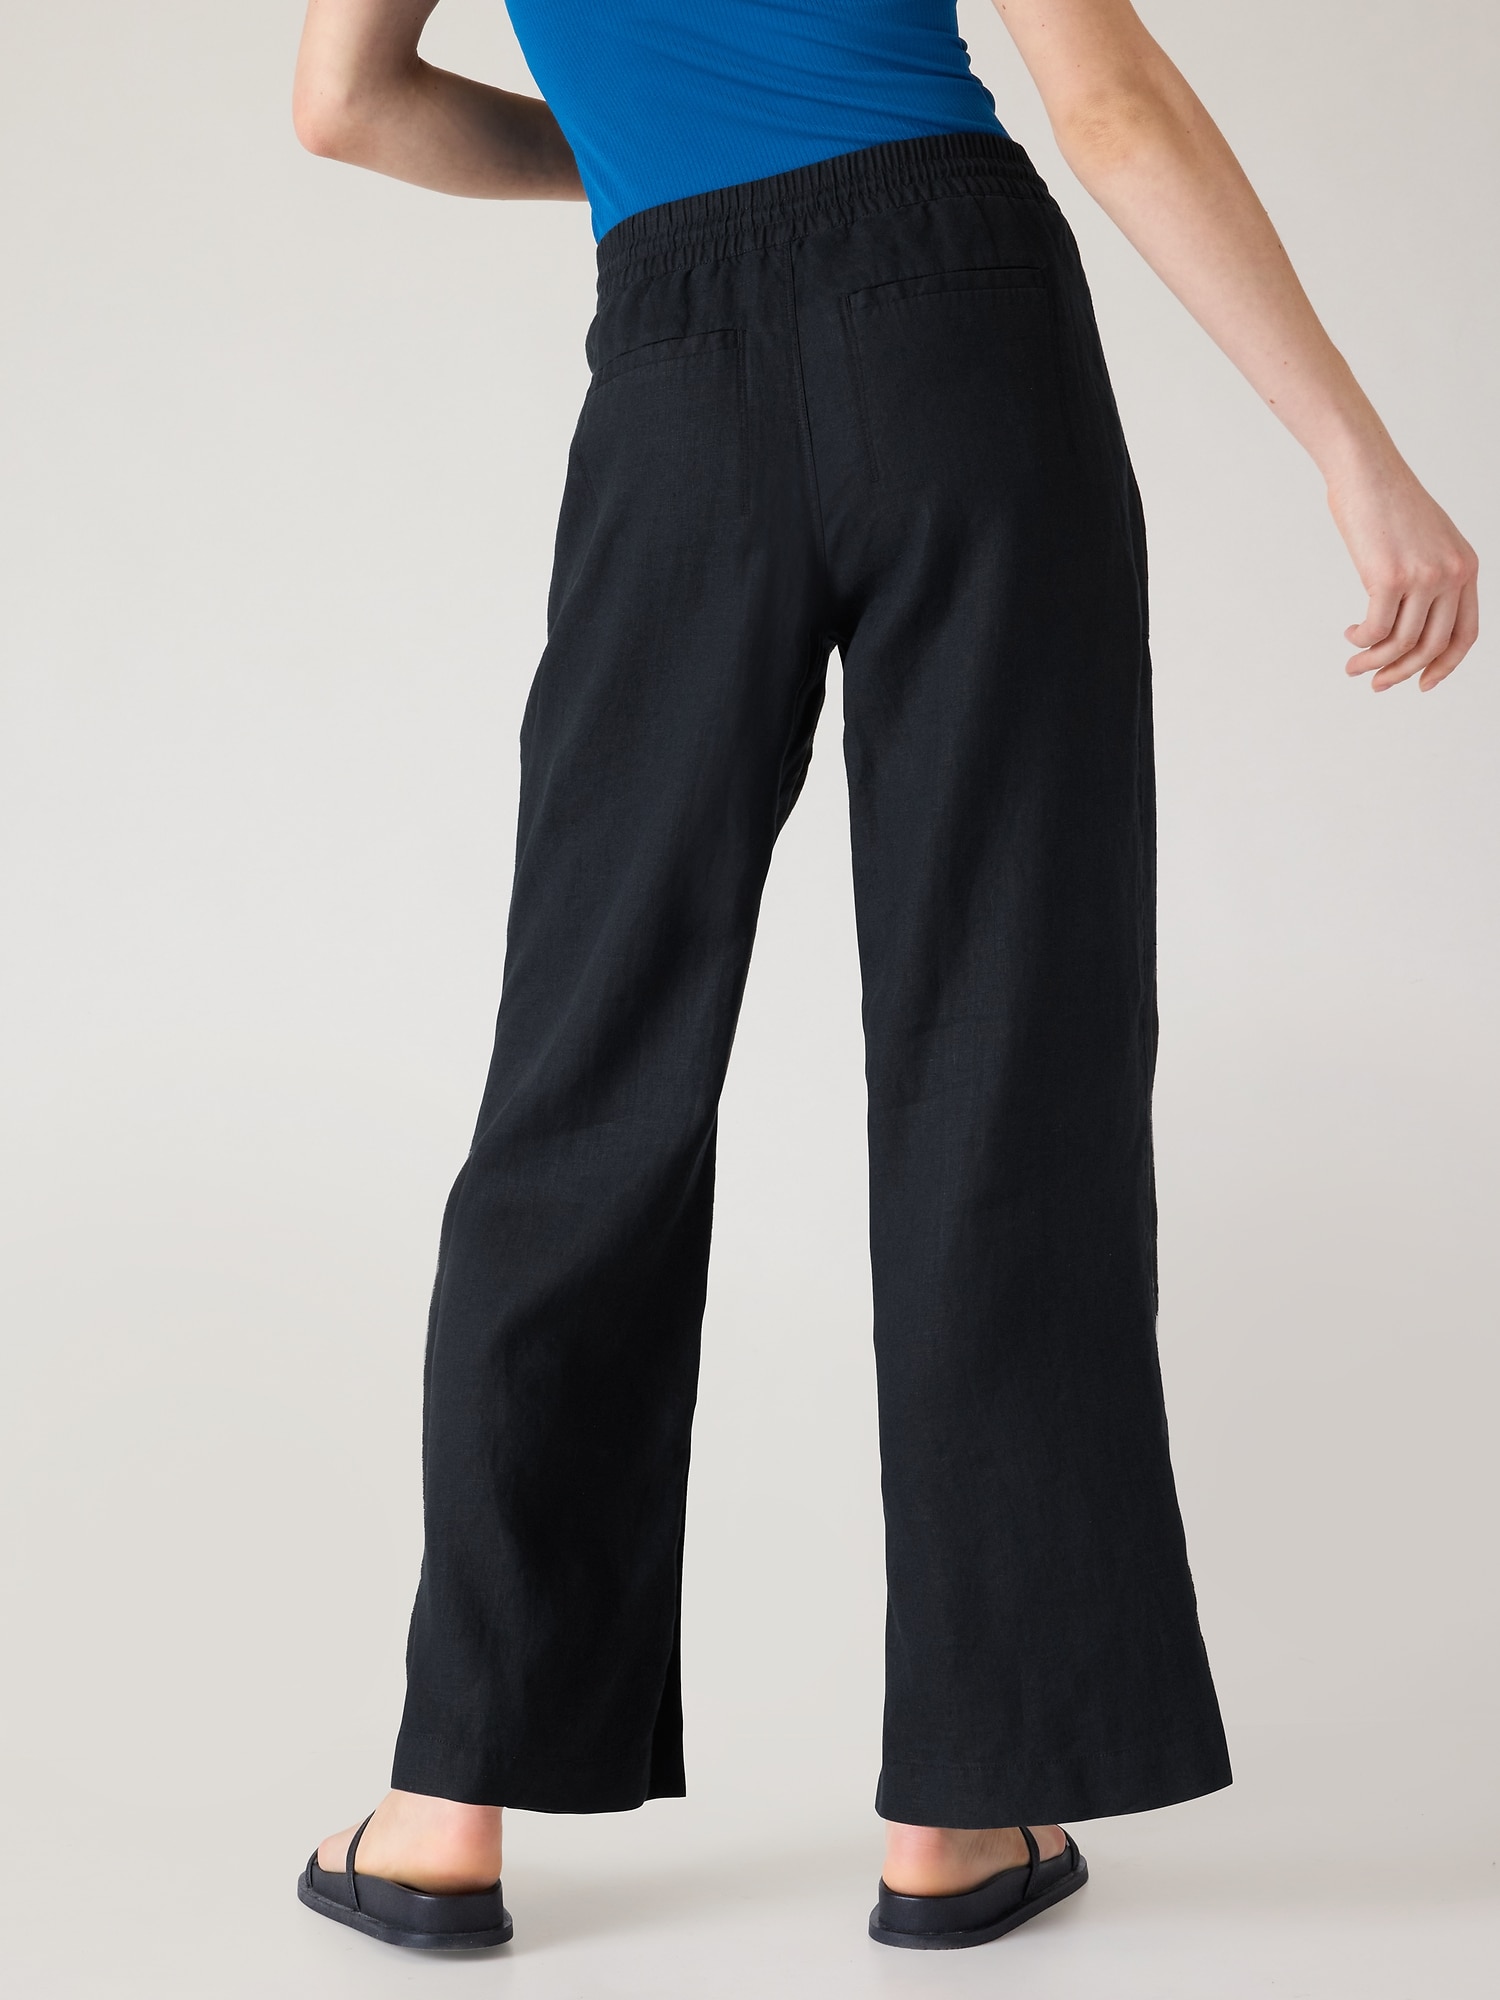 JULIET Wide Leg Linen Pants / Elegant High Waisted Linen Pants With Pockets  / Linen Trousers / Paper Bag Waist Pants -  Canada